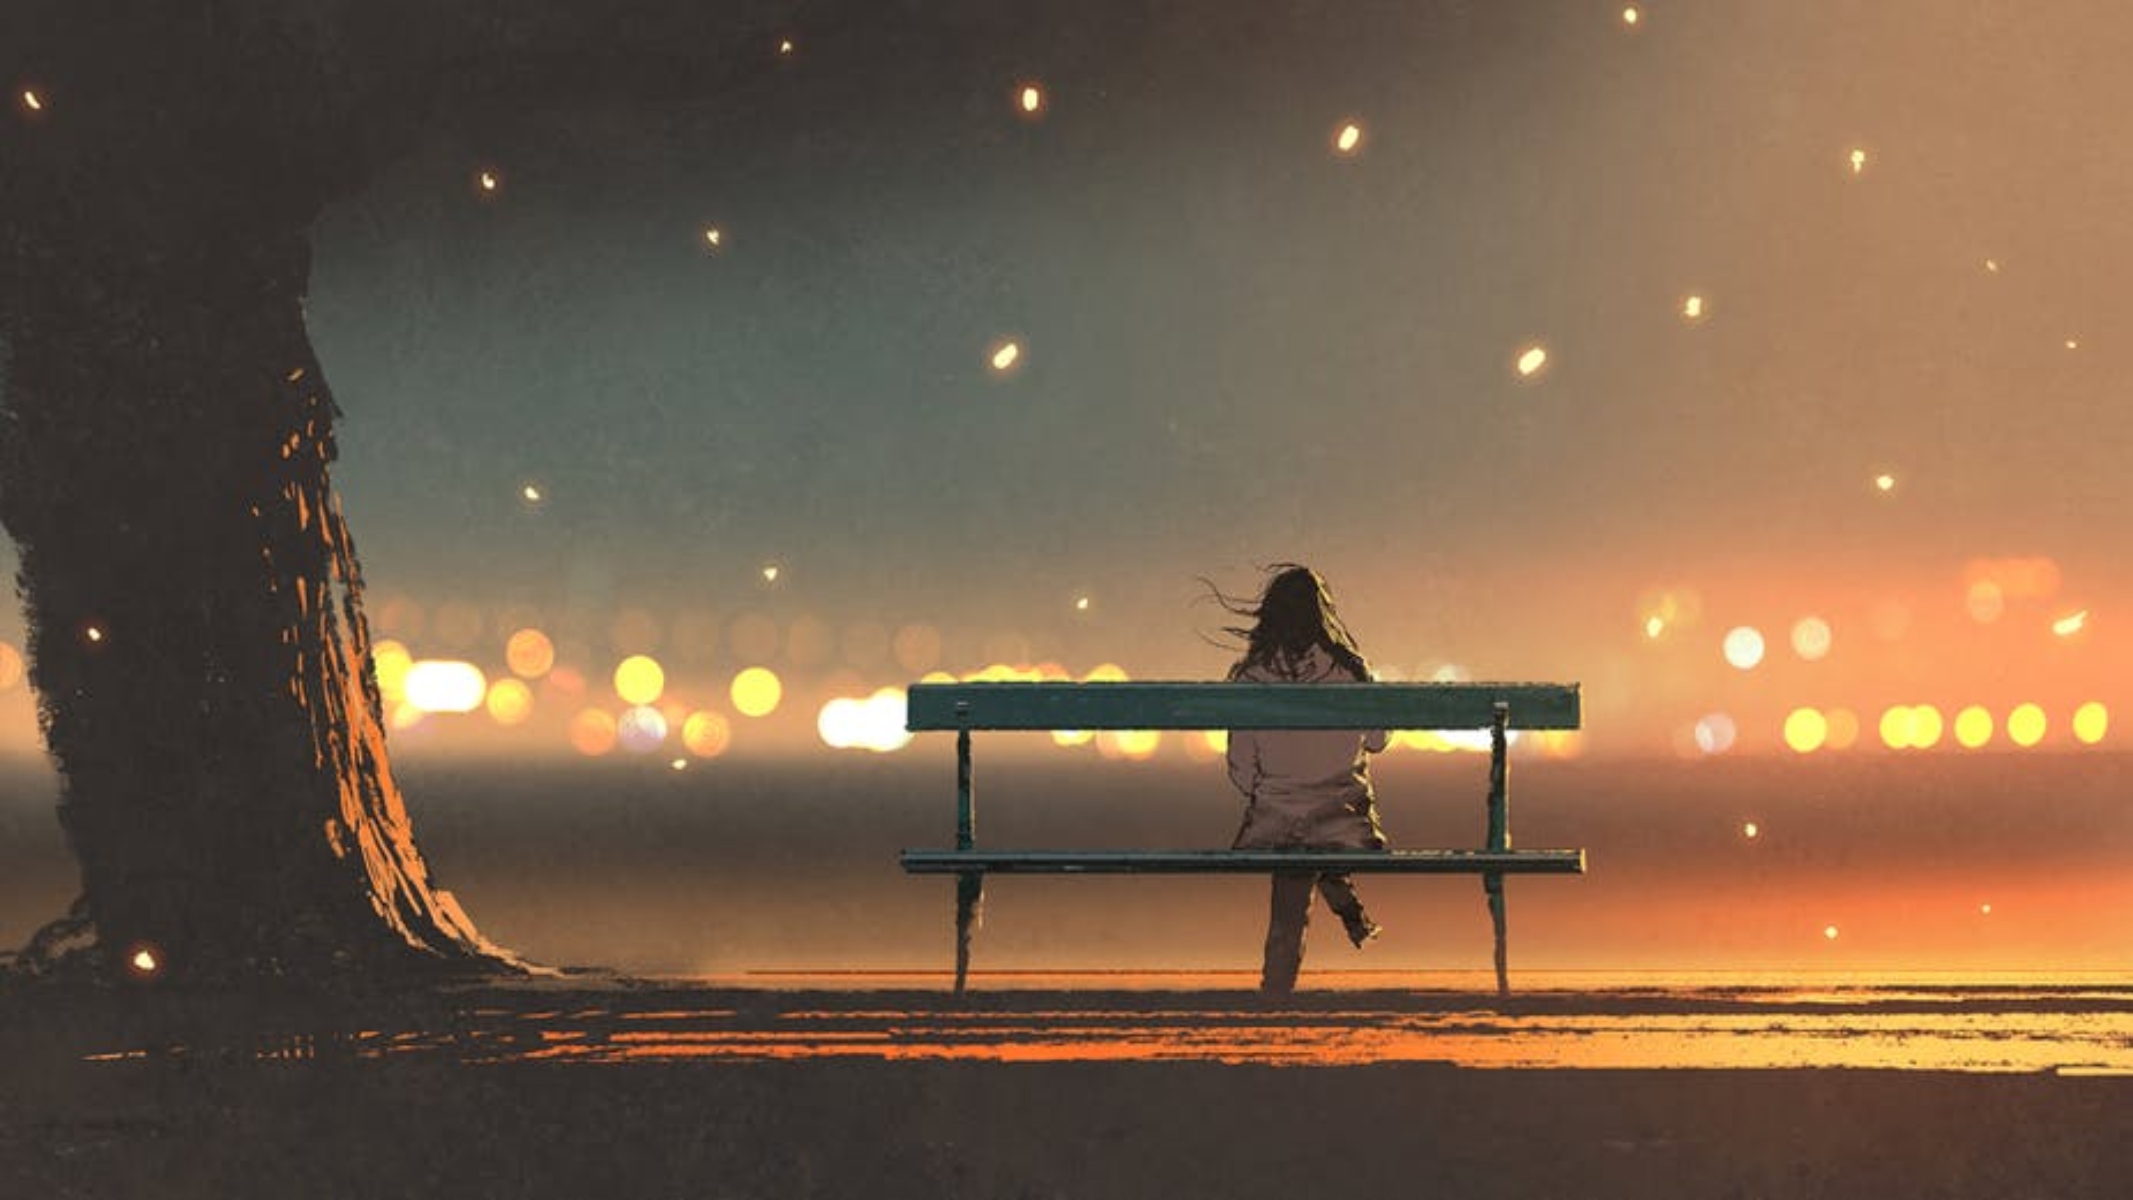 Είμαι καιρό μόνος:  Ποιες είναι οι επιπτώσεις της μοναξιάς